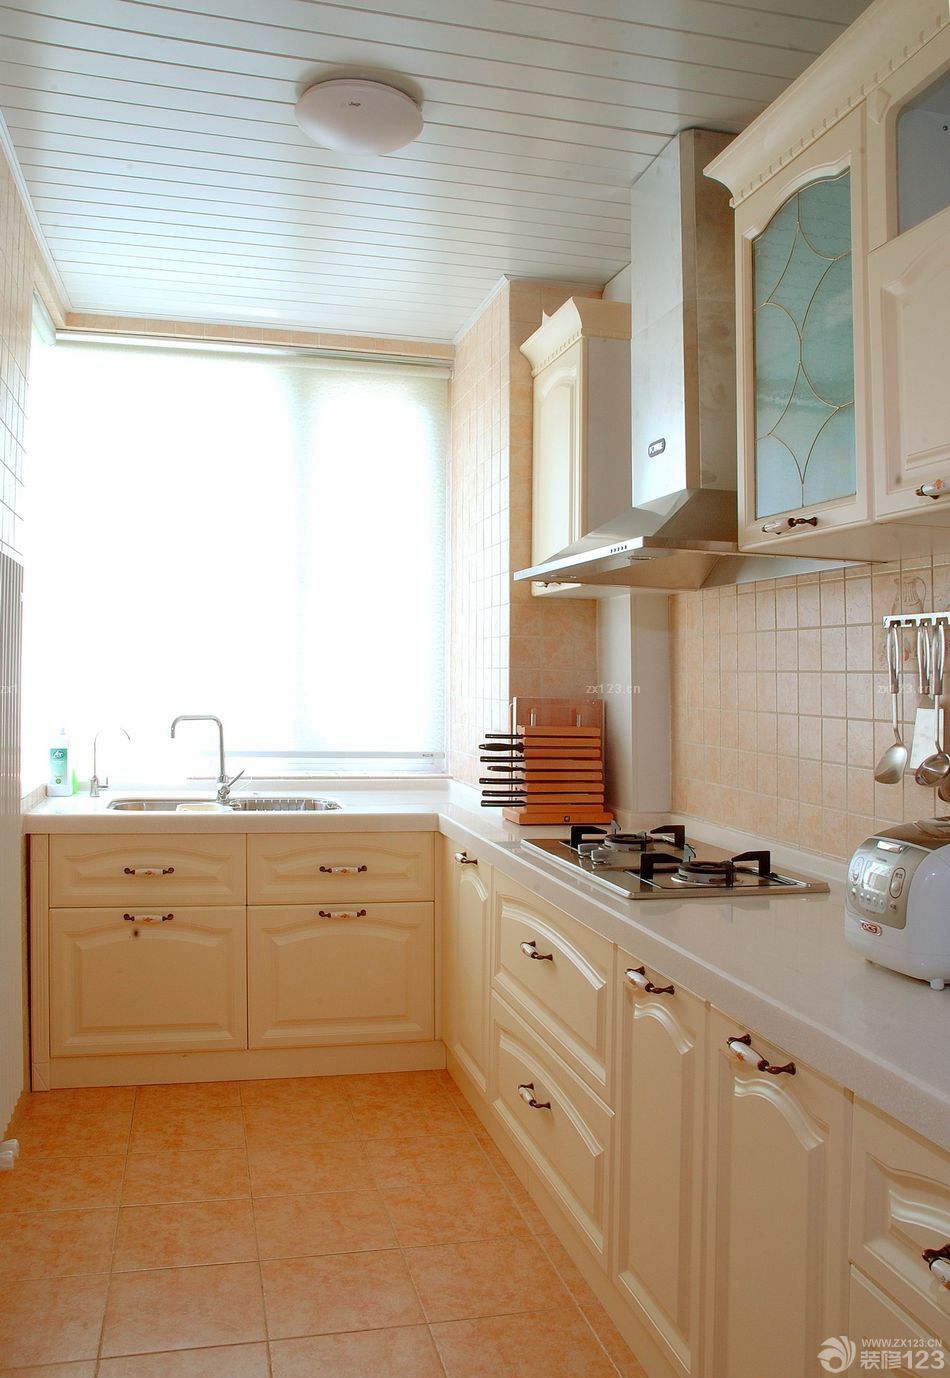 90平三房房屋厨房整体橱柜装修效果图欣赏